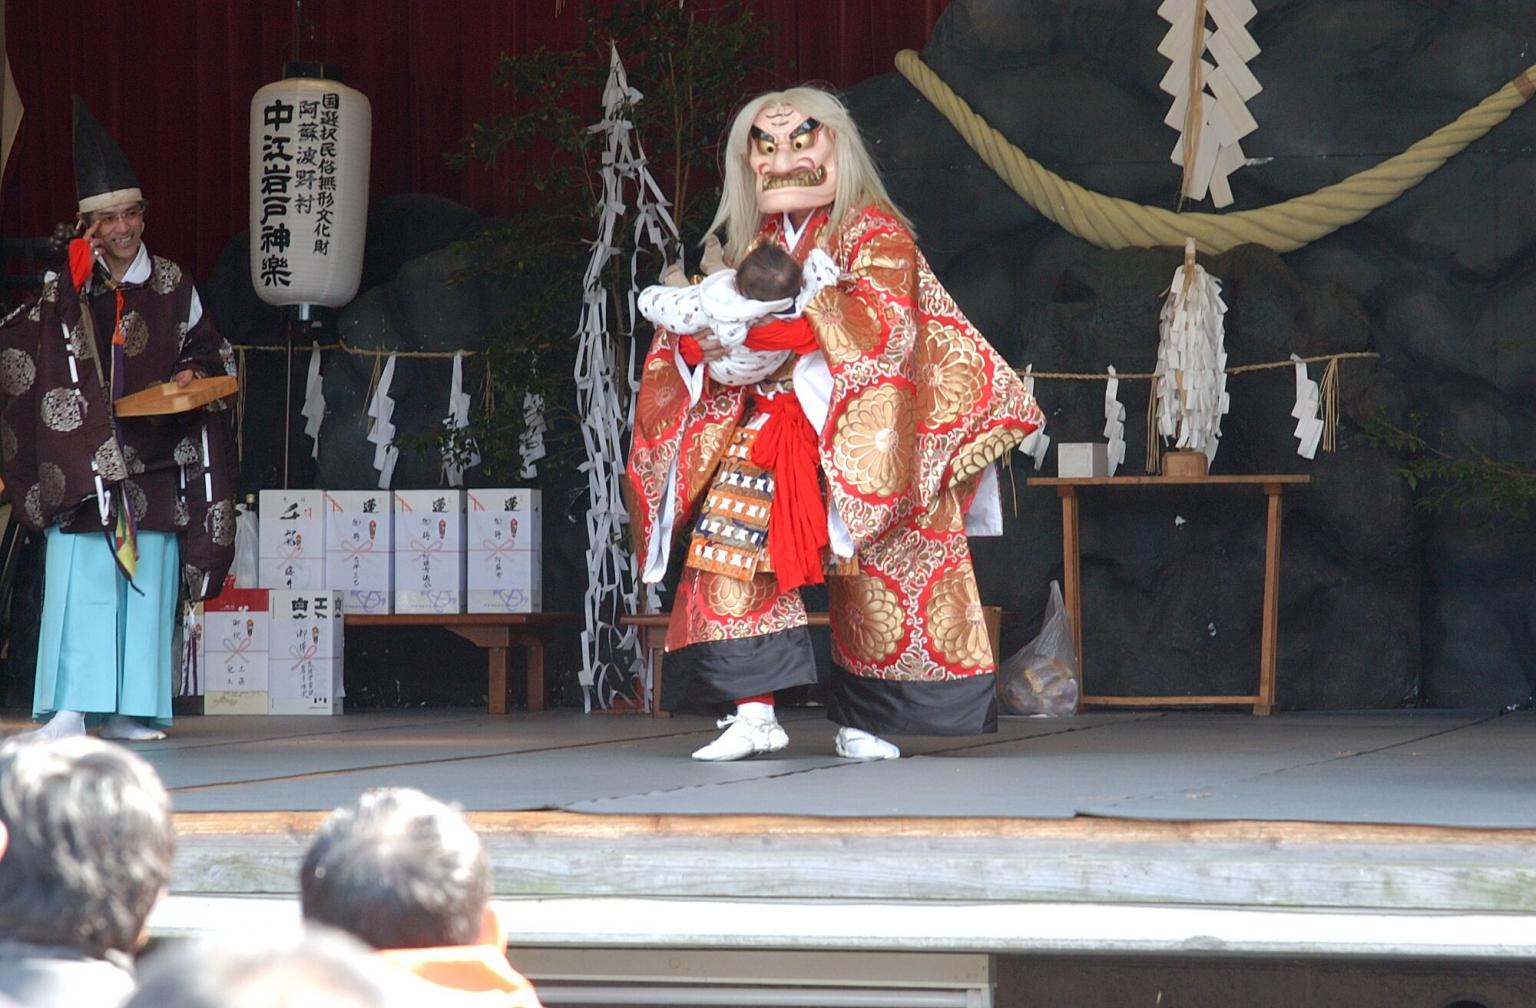 中江岩戸神楽定期公演 イベント 公式 熊本県観光サイト もっと もーっと くまもっと